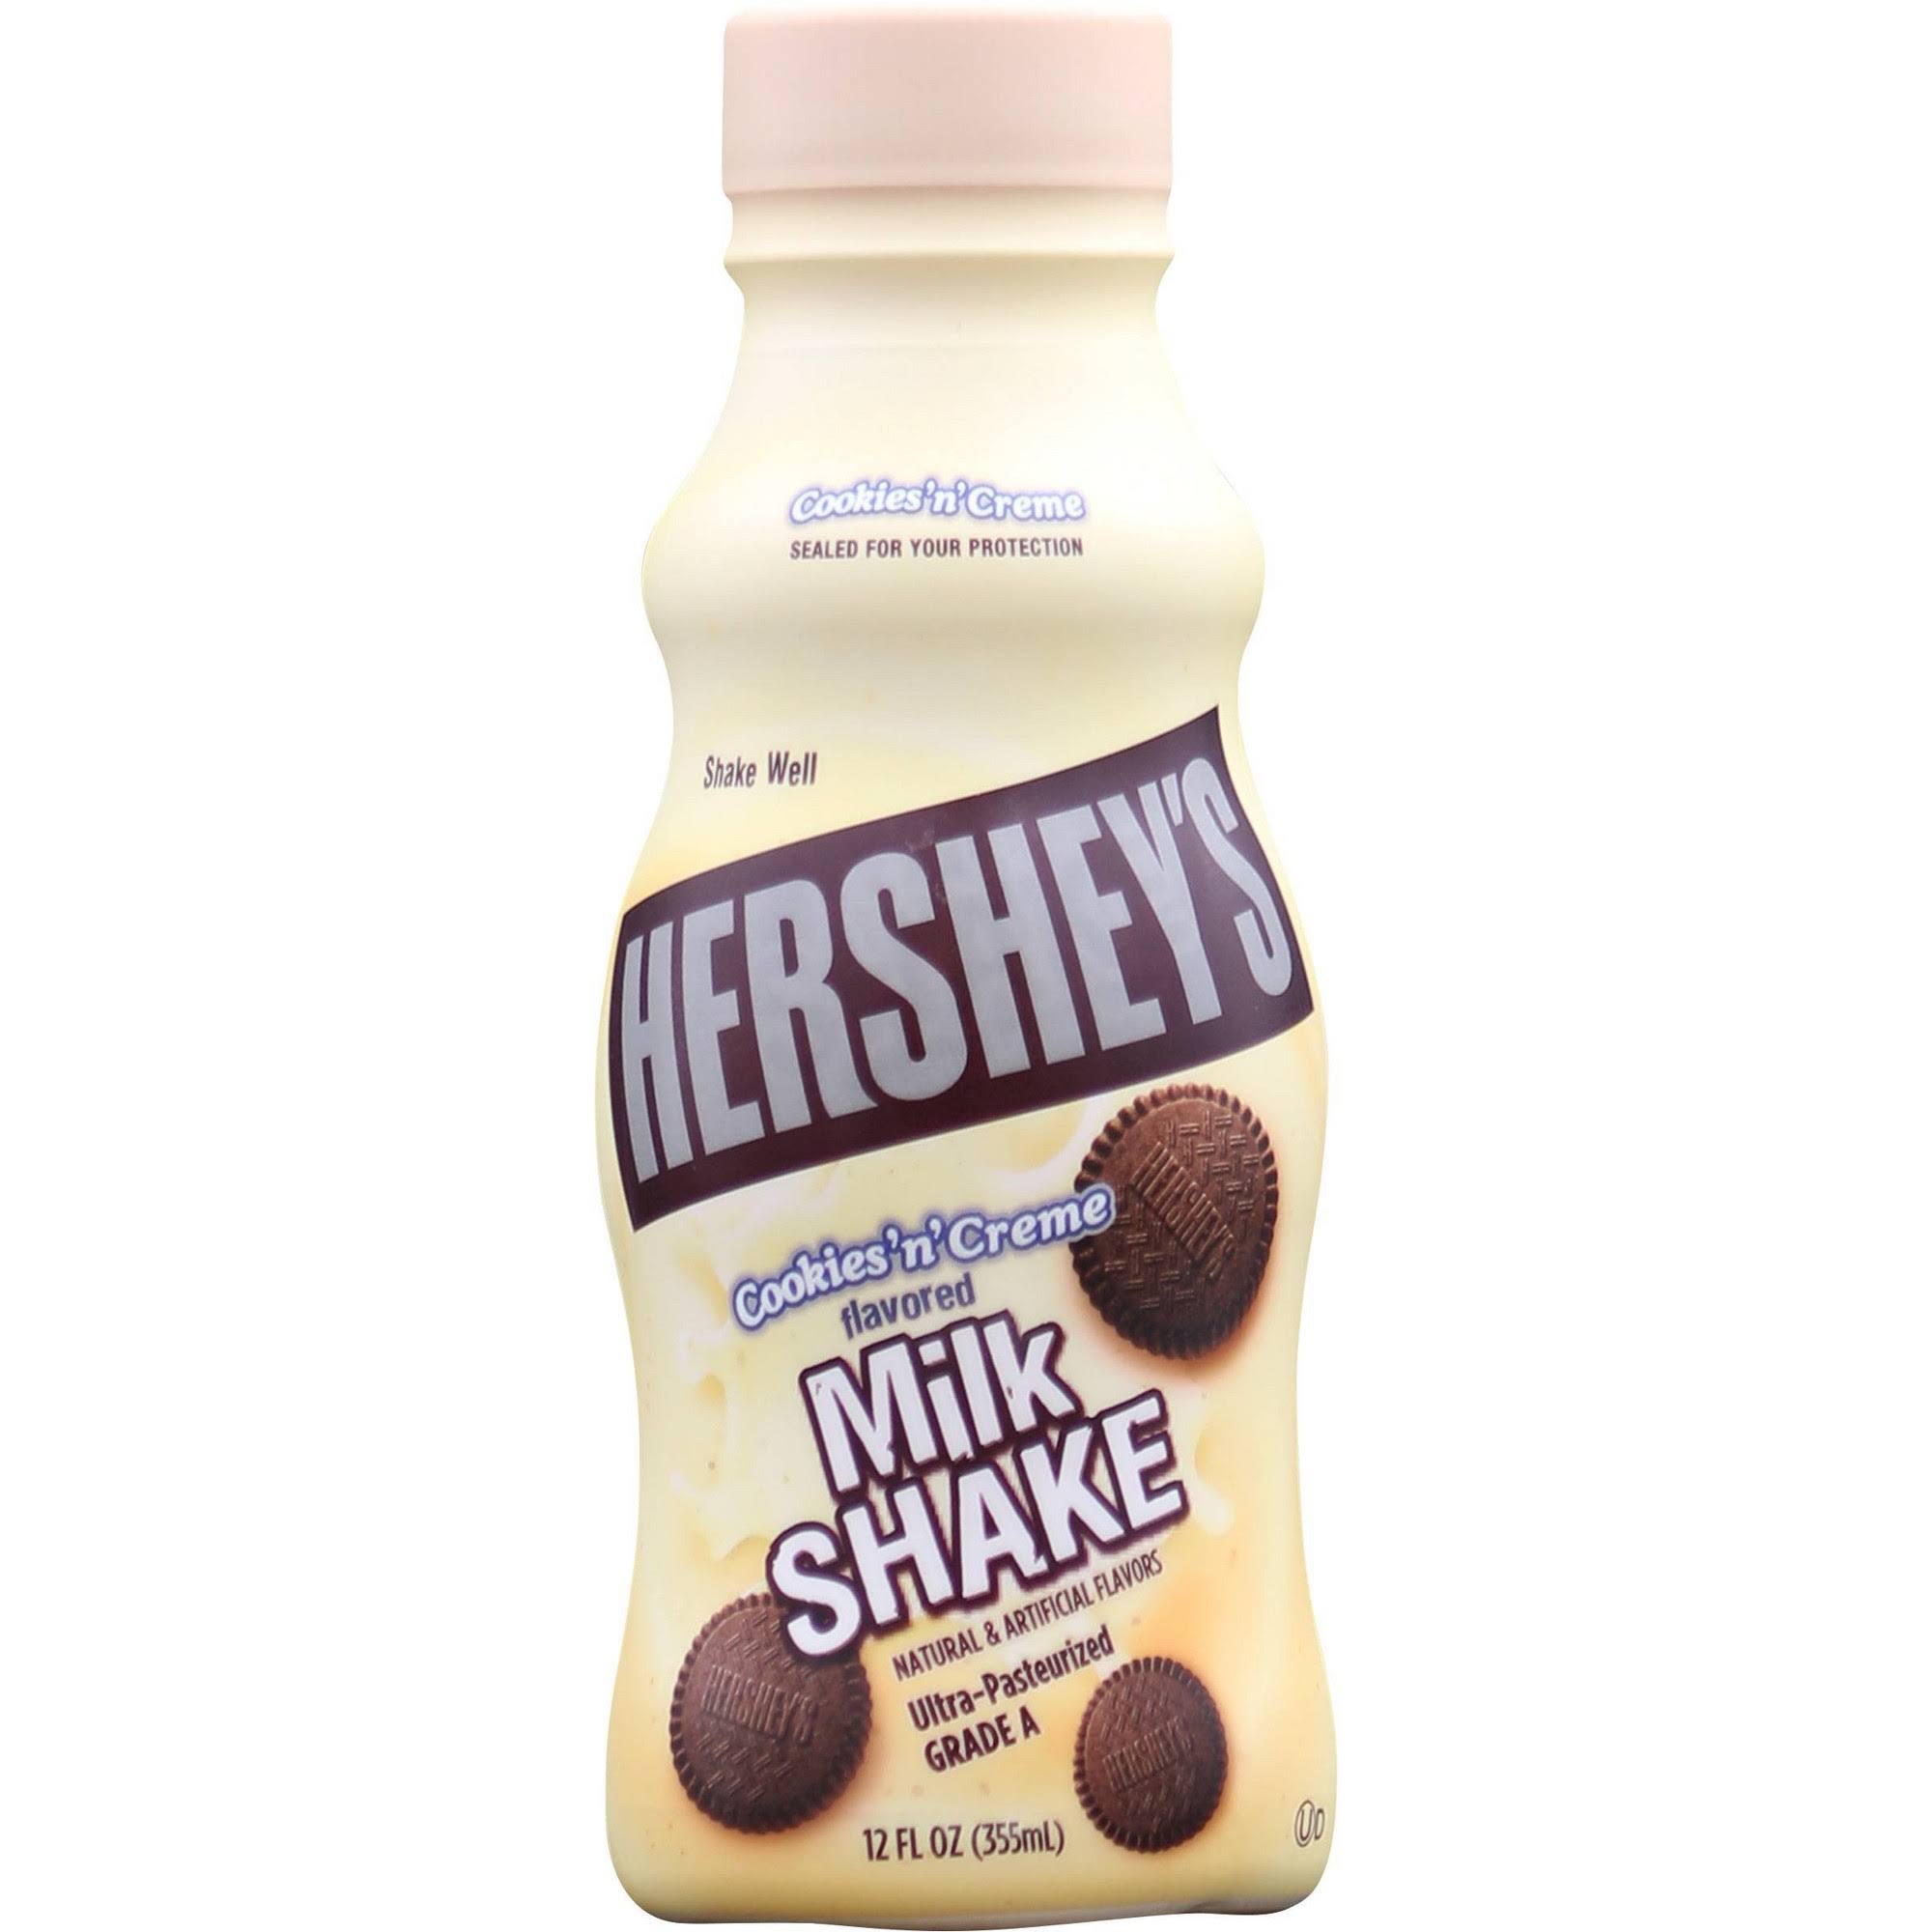 Hershey's Milk Shake - Cookies 'n' Creme, 12oz